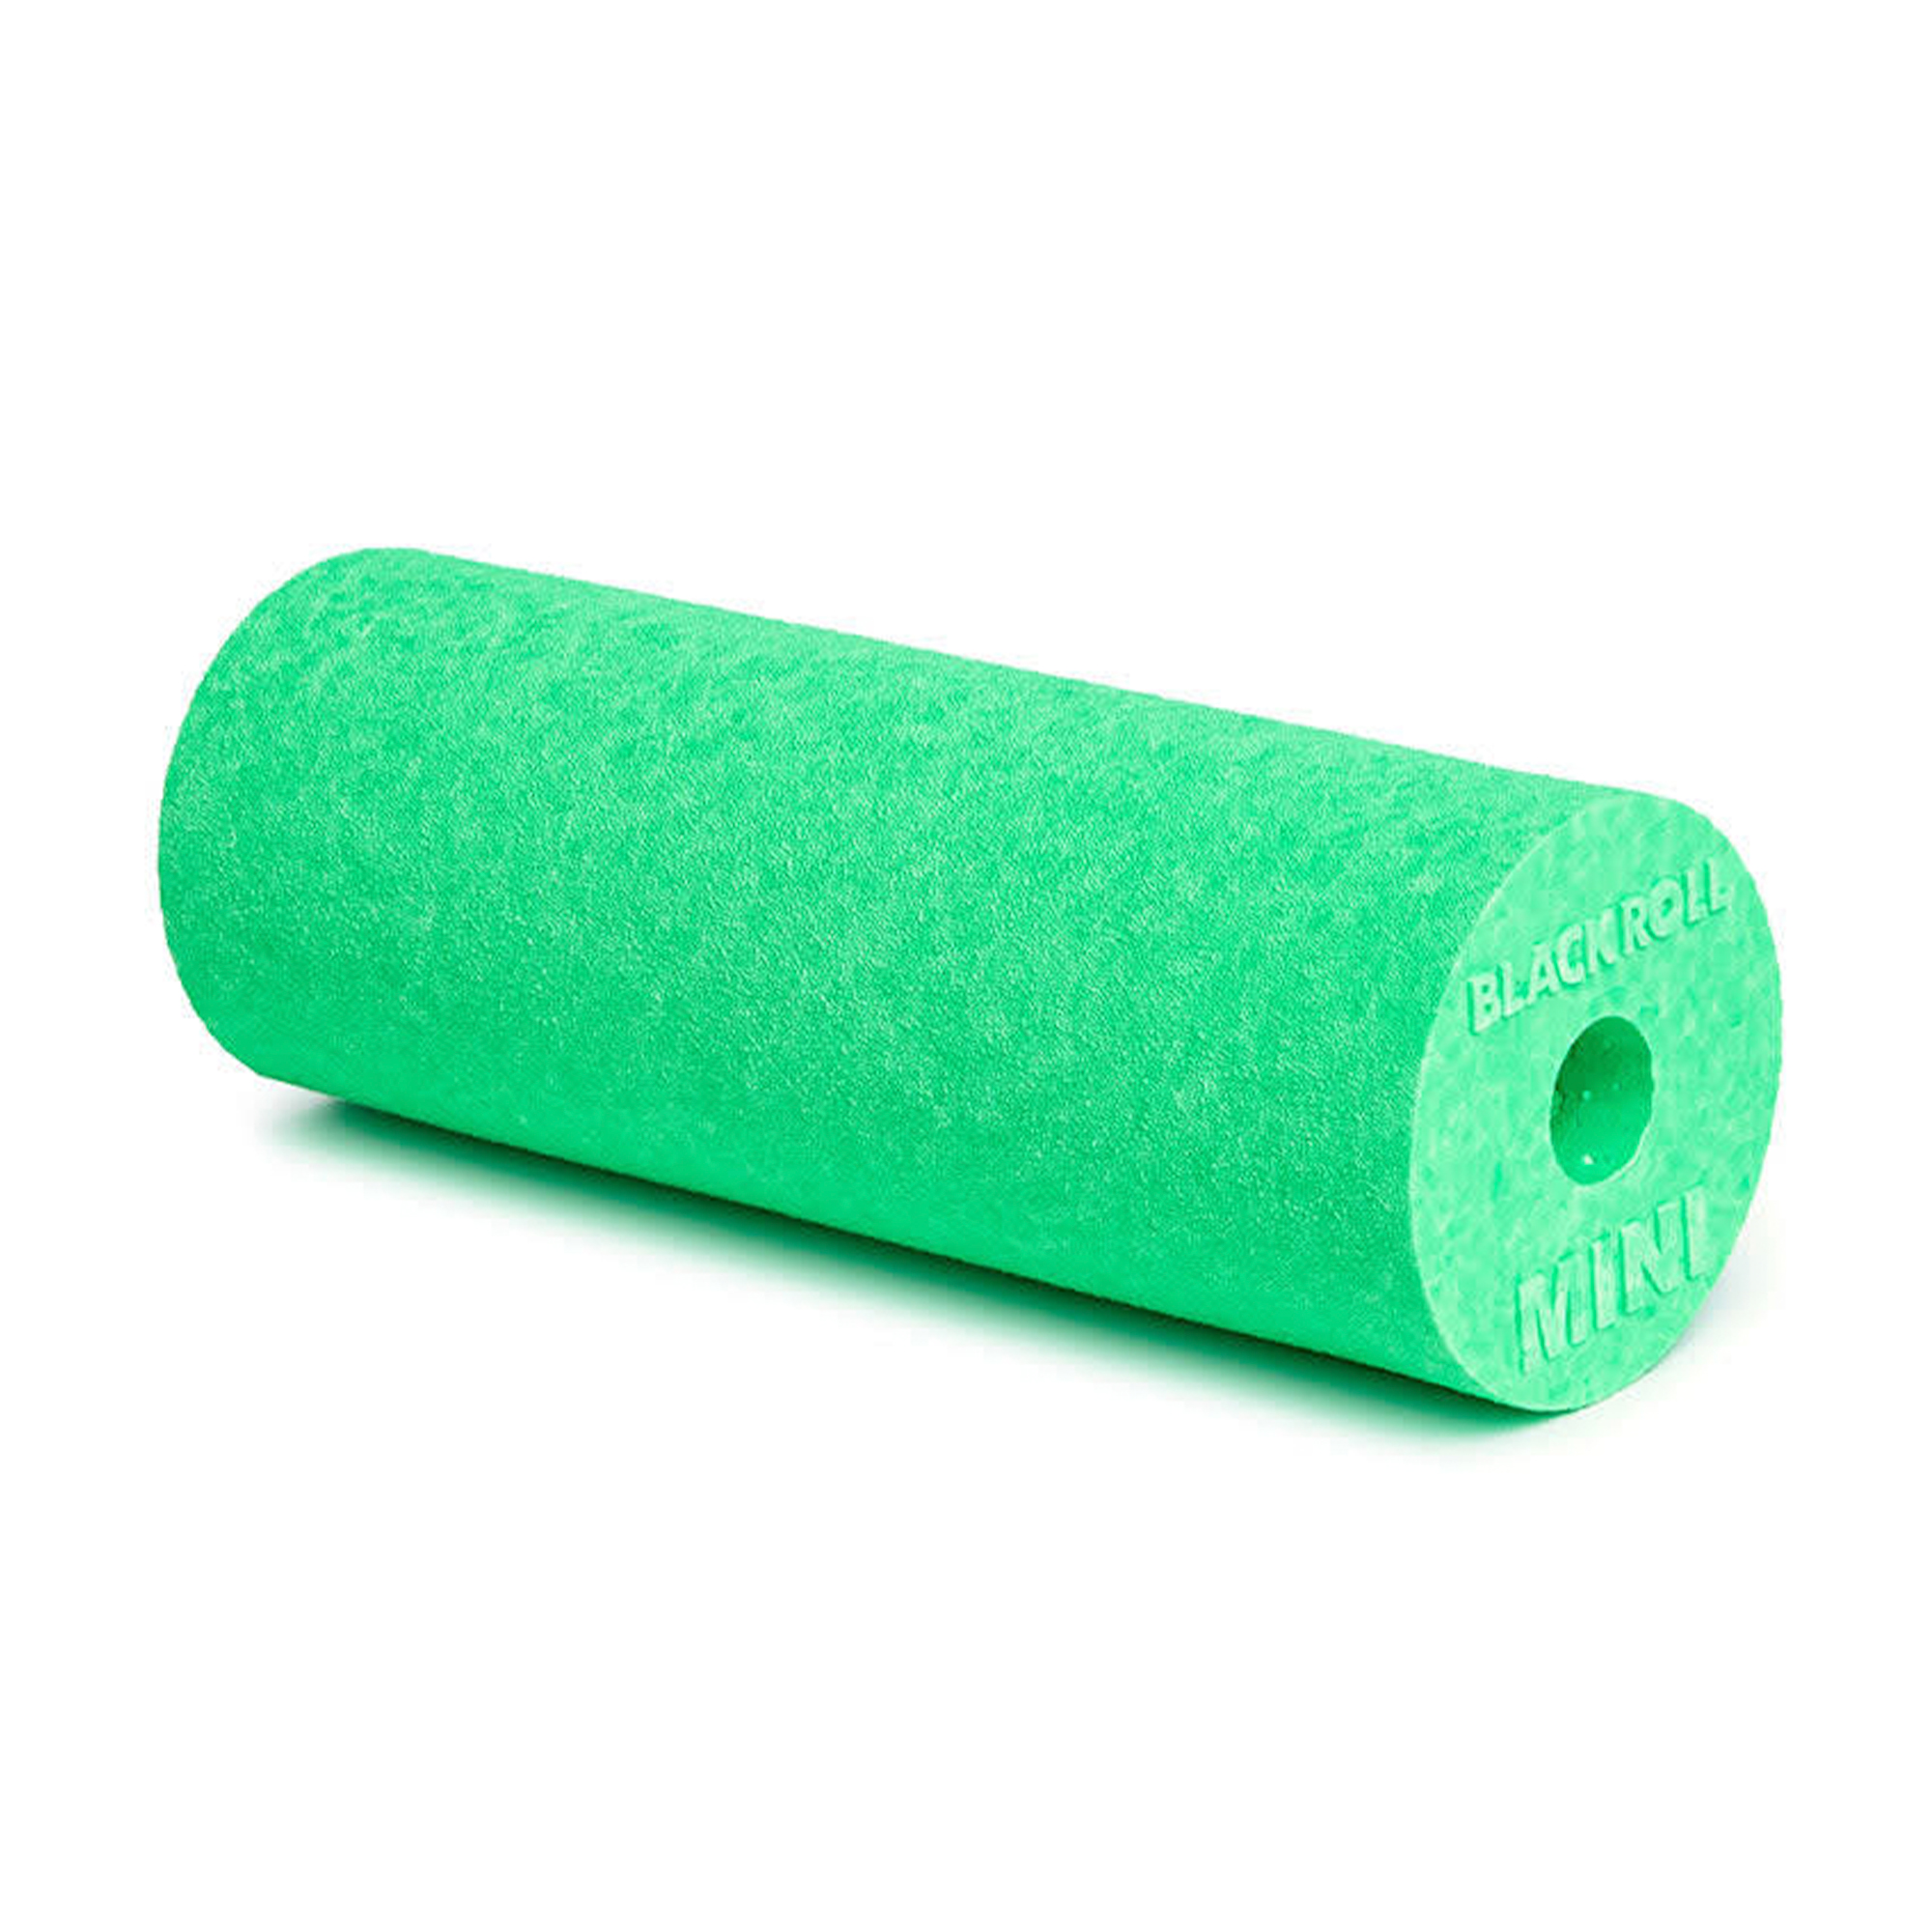 Brug Blackroll Mini Flow Foam Roller - Grøn (15 x 6 cm) til en forbedret oplevelse